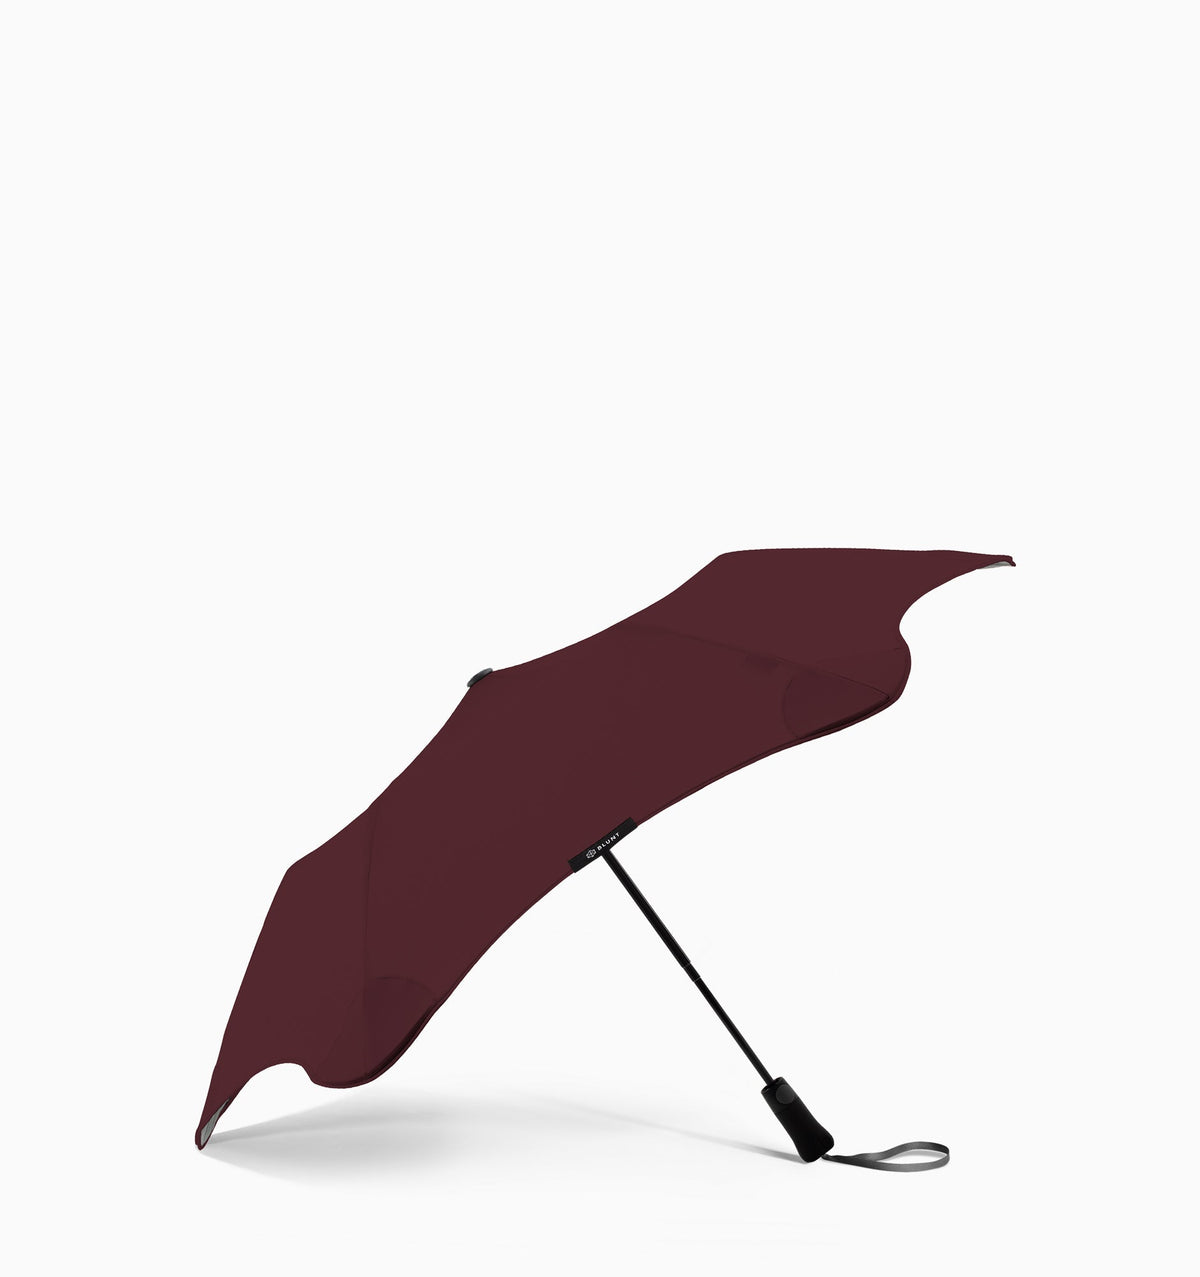 Blunt Metro Compact Umbrella